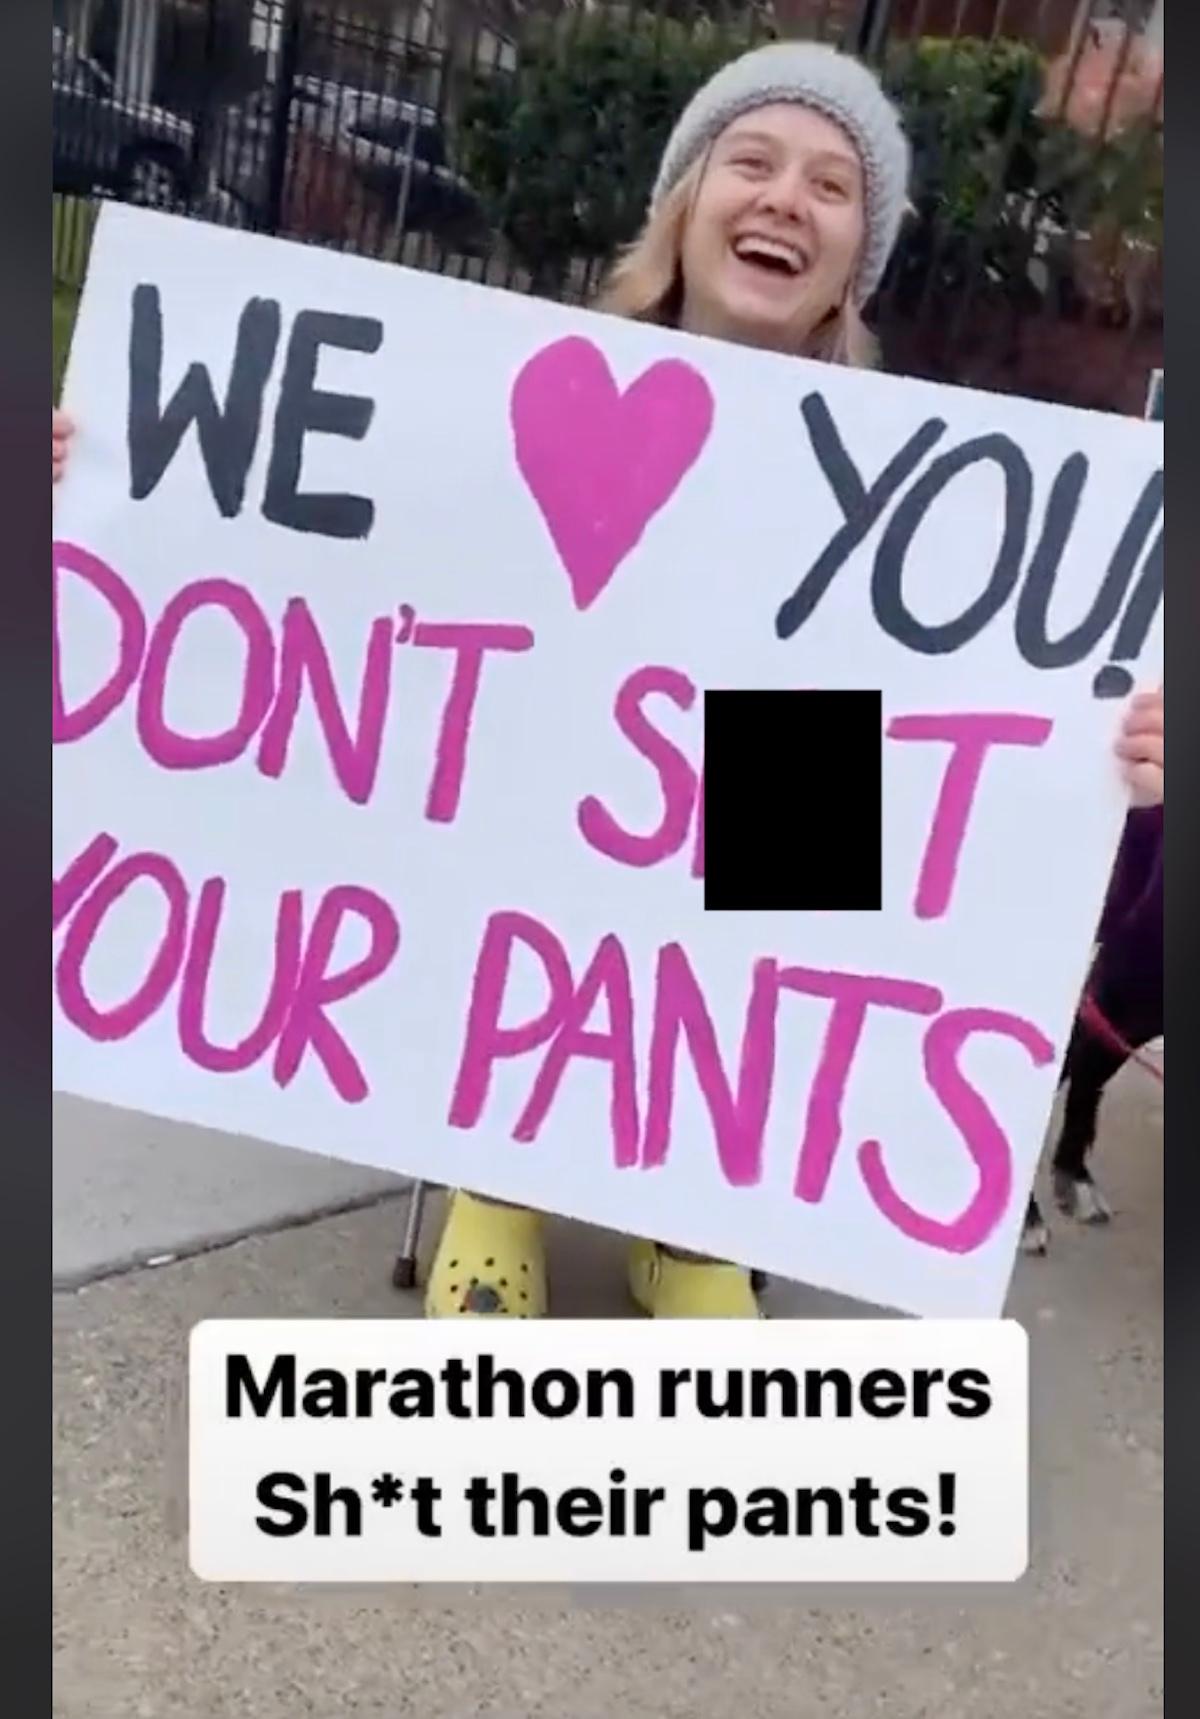 en kvinna som håller i en skylt där det står "Vi älskar dig, skita inte i byxorna."